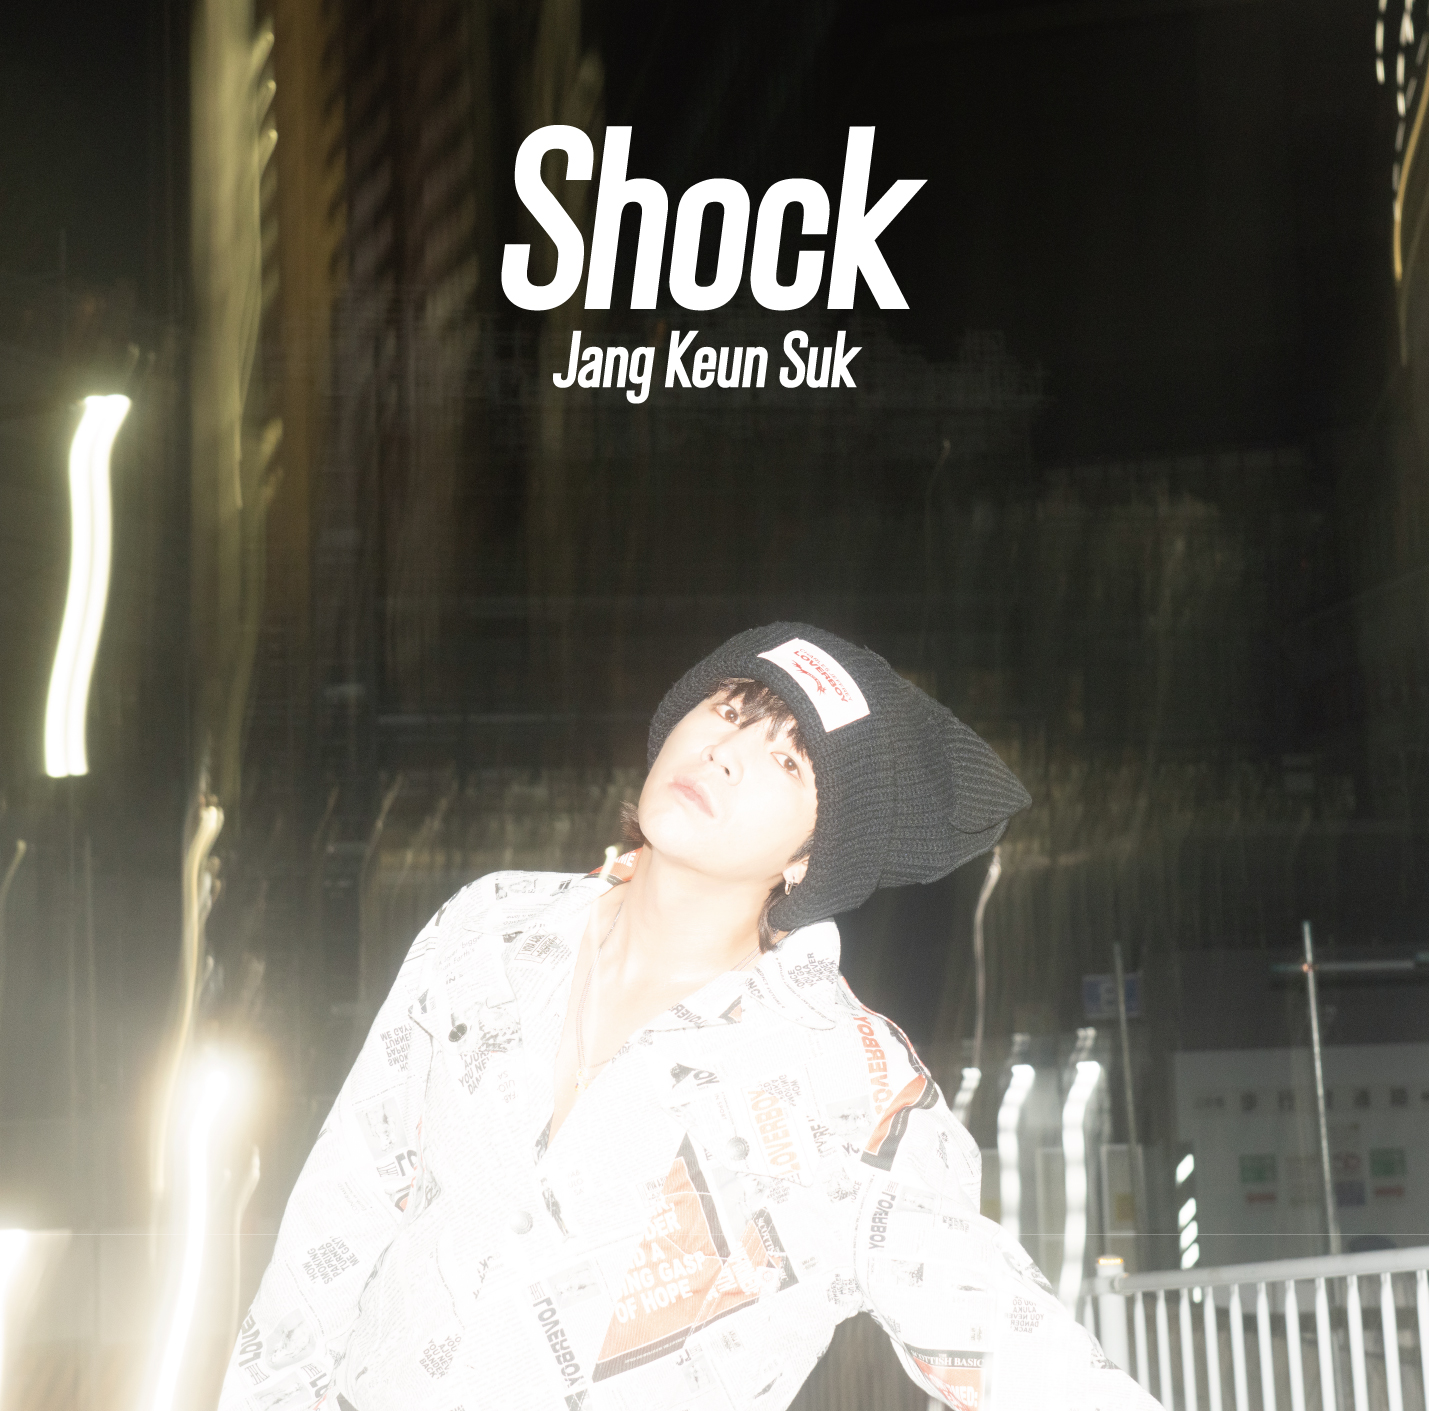 チャン・グンソク 夏のニューシングル『Shock』9月27日リリース《HMV